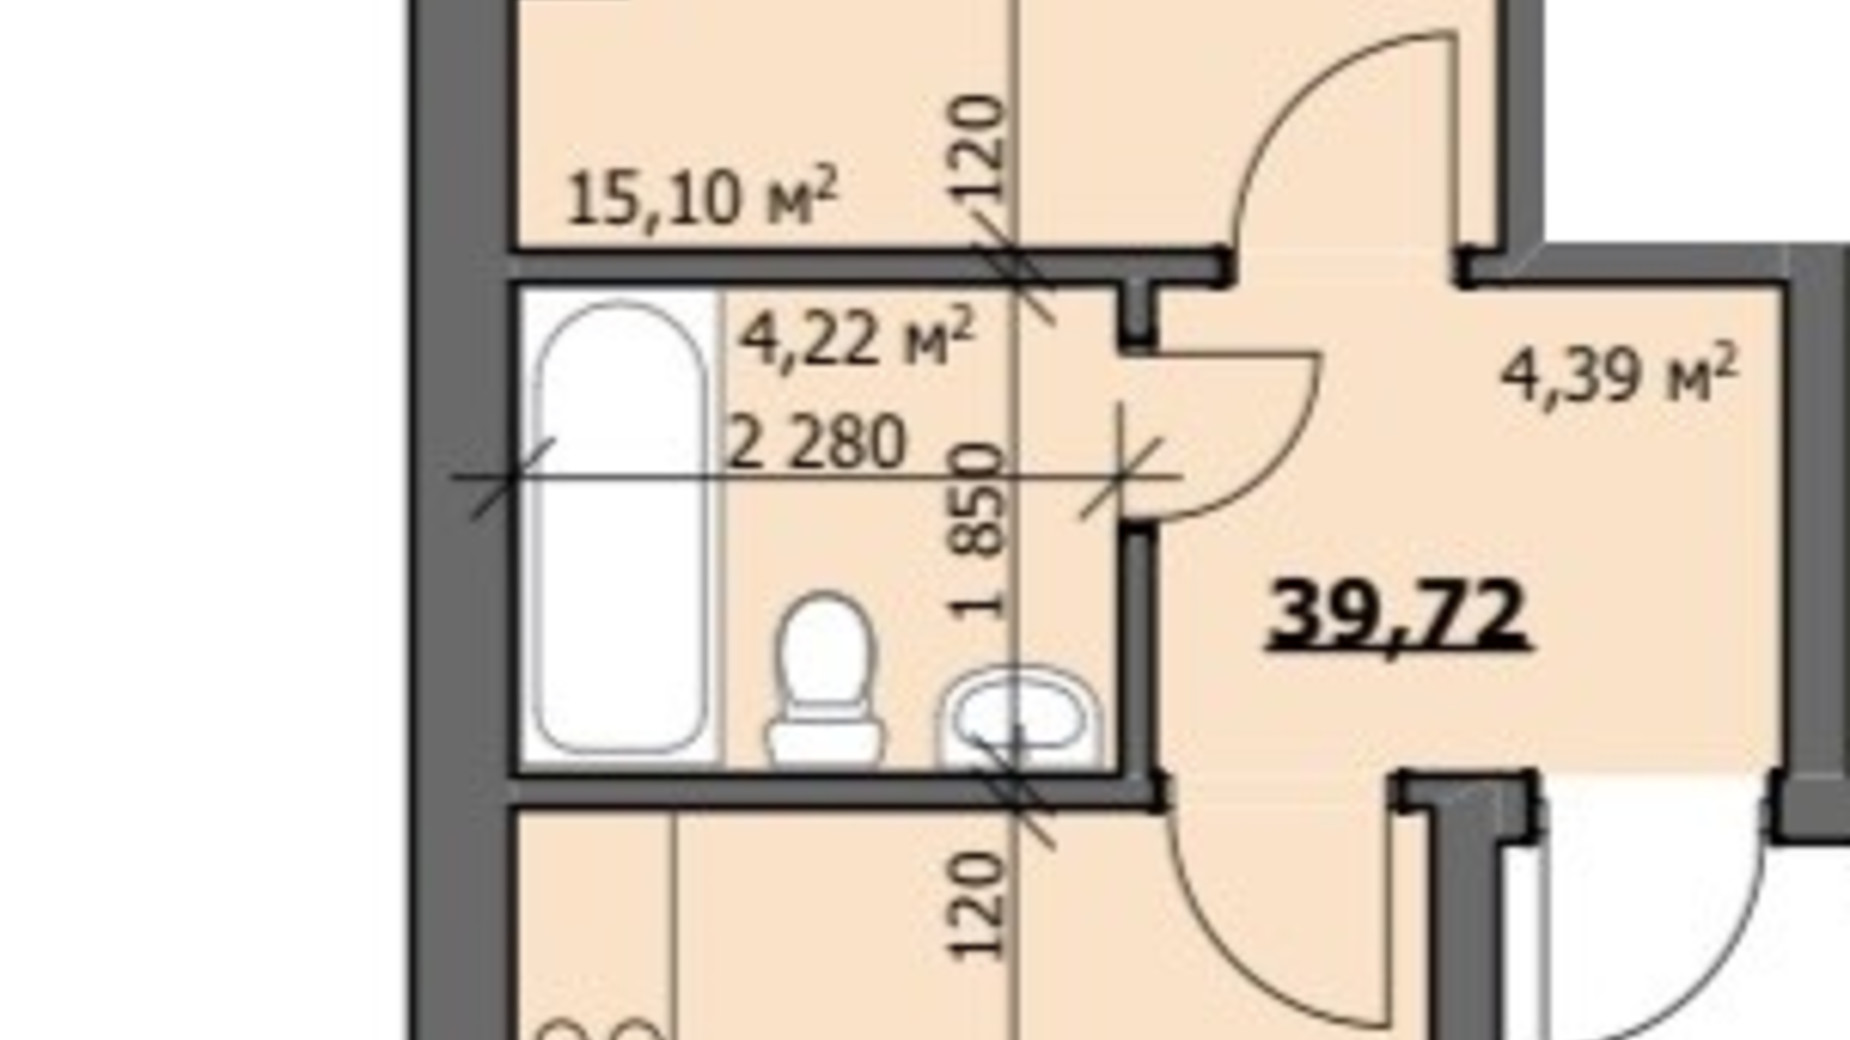 Планировка 1-комнатной квартиры в ЖК ул. Наливайко 40 м², фото 686457